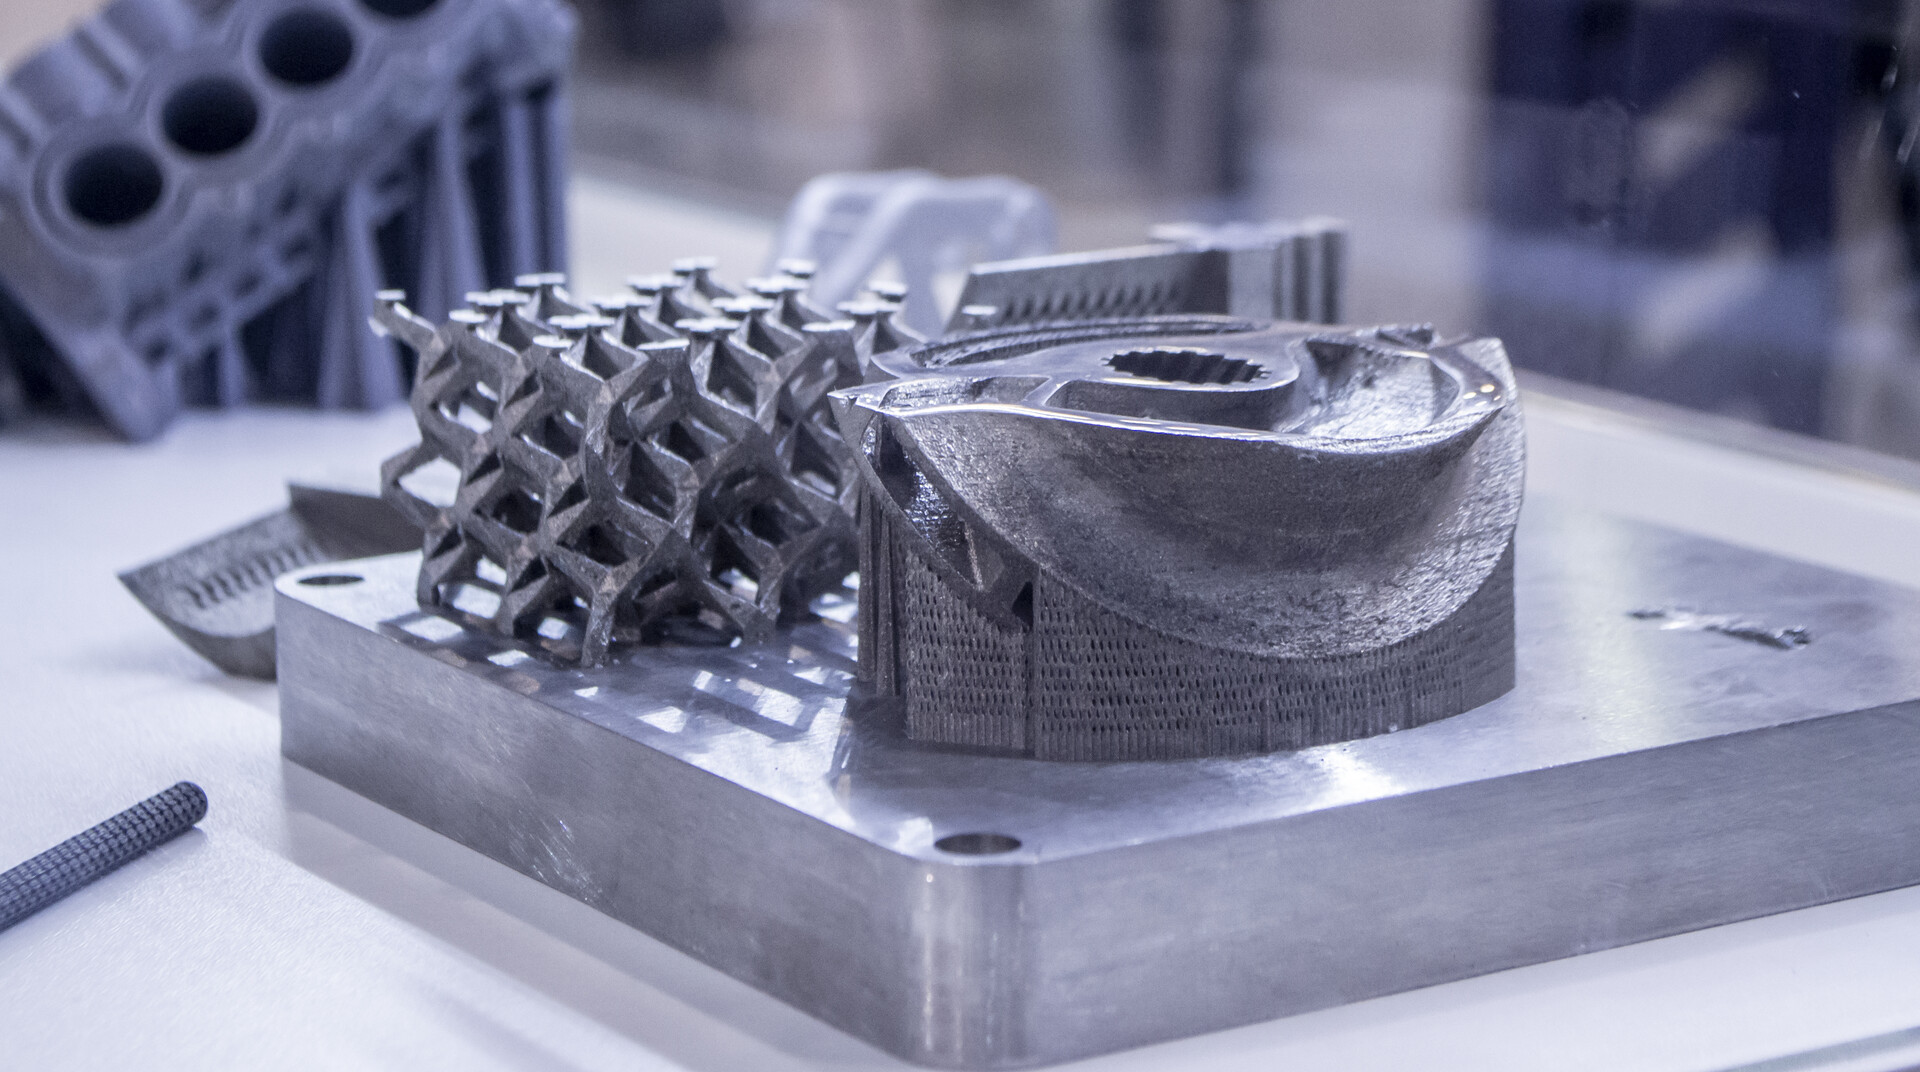 <p>An Aluminum First: Standards for 3D Printing&nbsp;</p>
